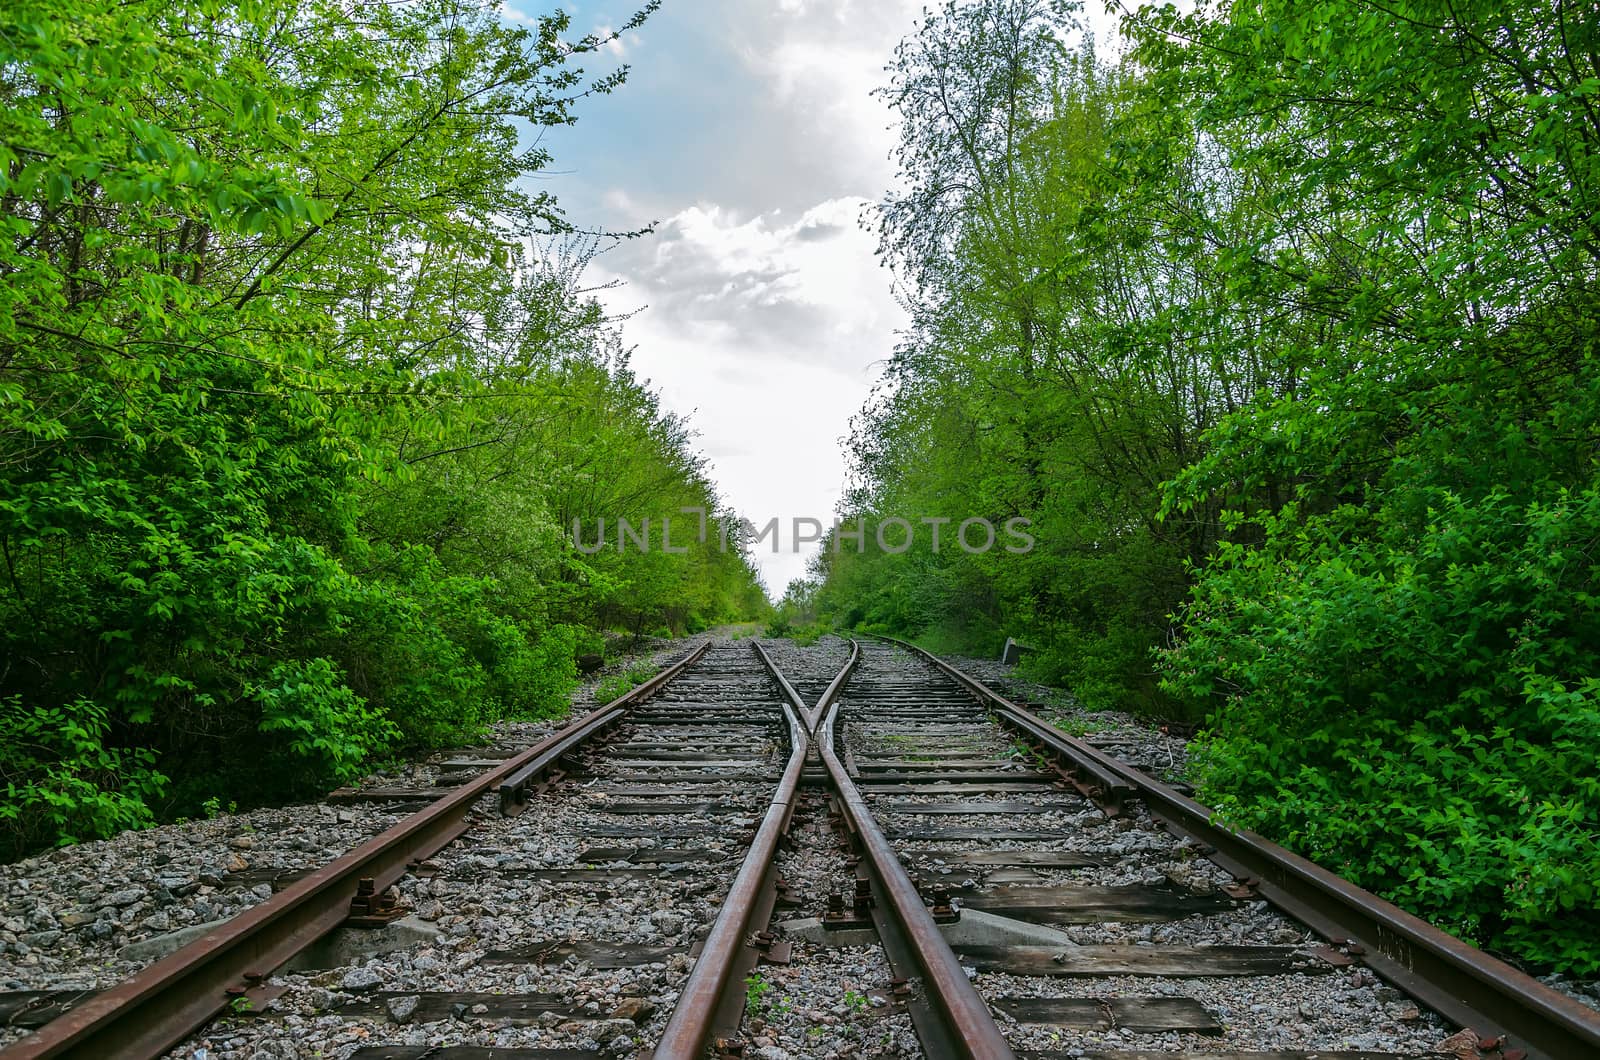 crossing of two railroads in wood